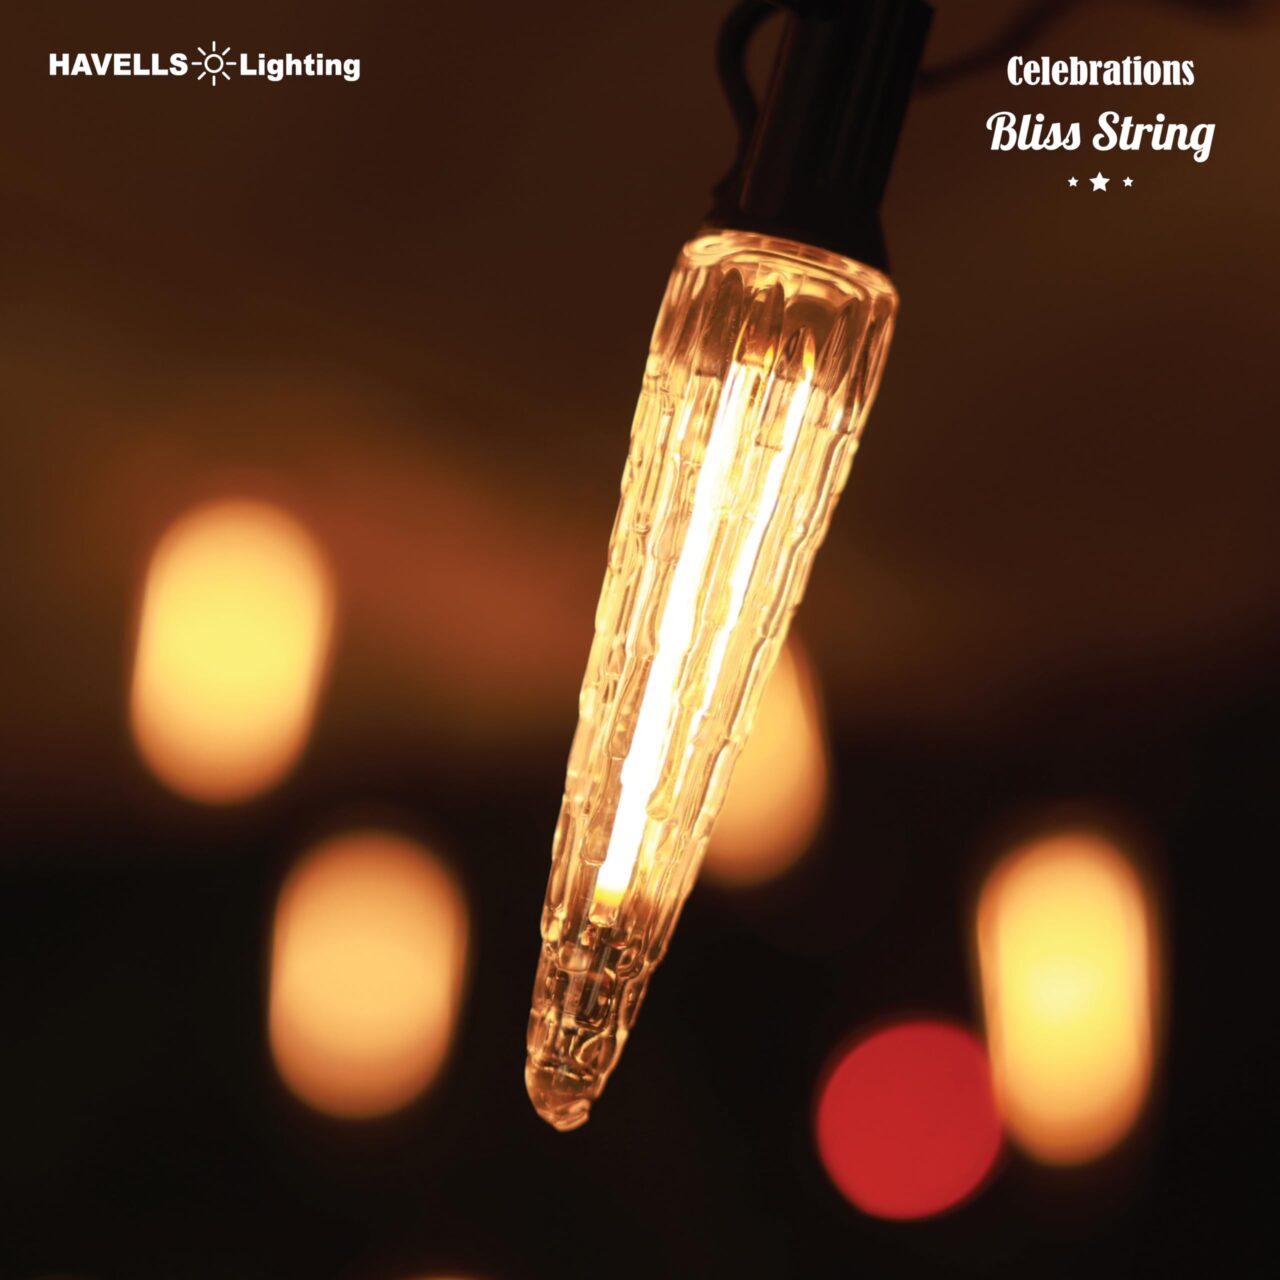 Havells Introduces Diverse Range of Celebration String Lighting